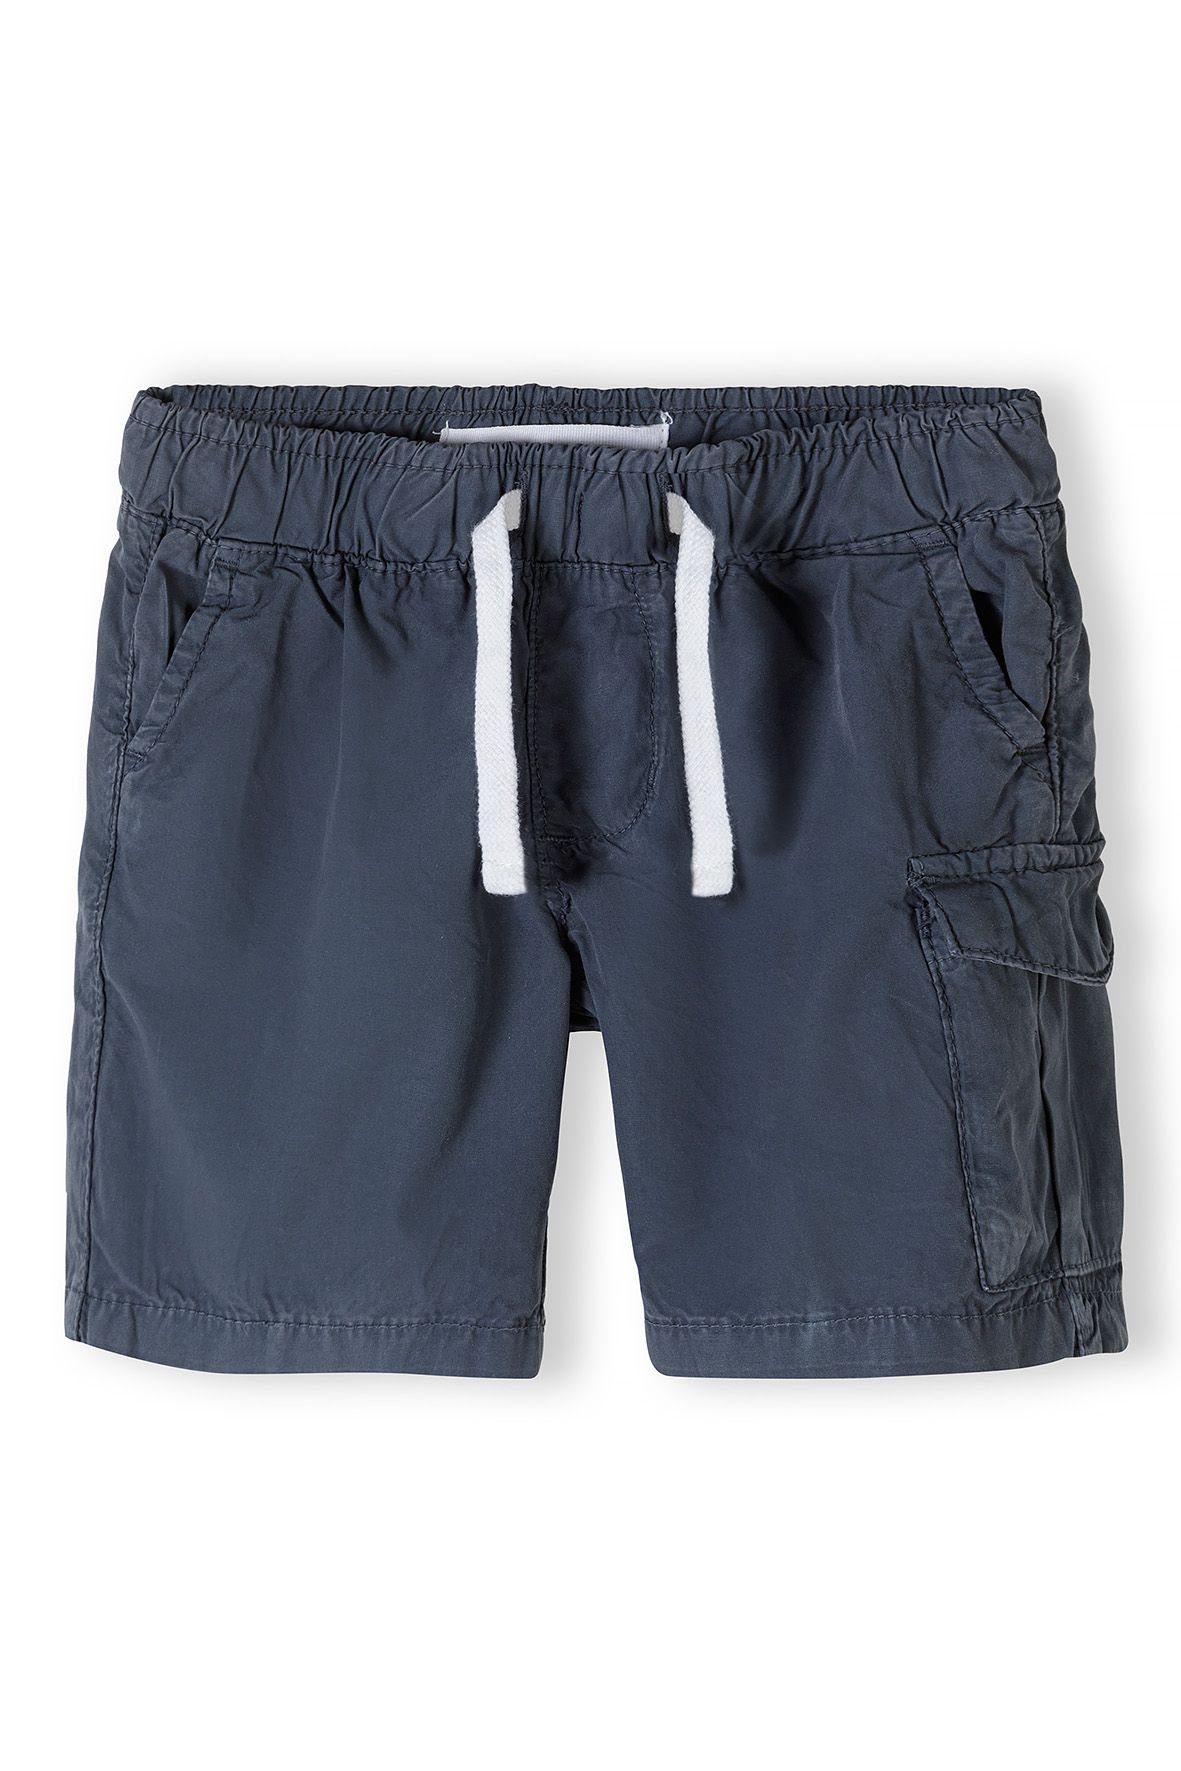 MINOTI Cargoshorts Shorts (12m-14y)